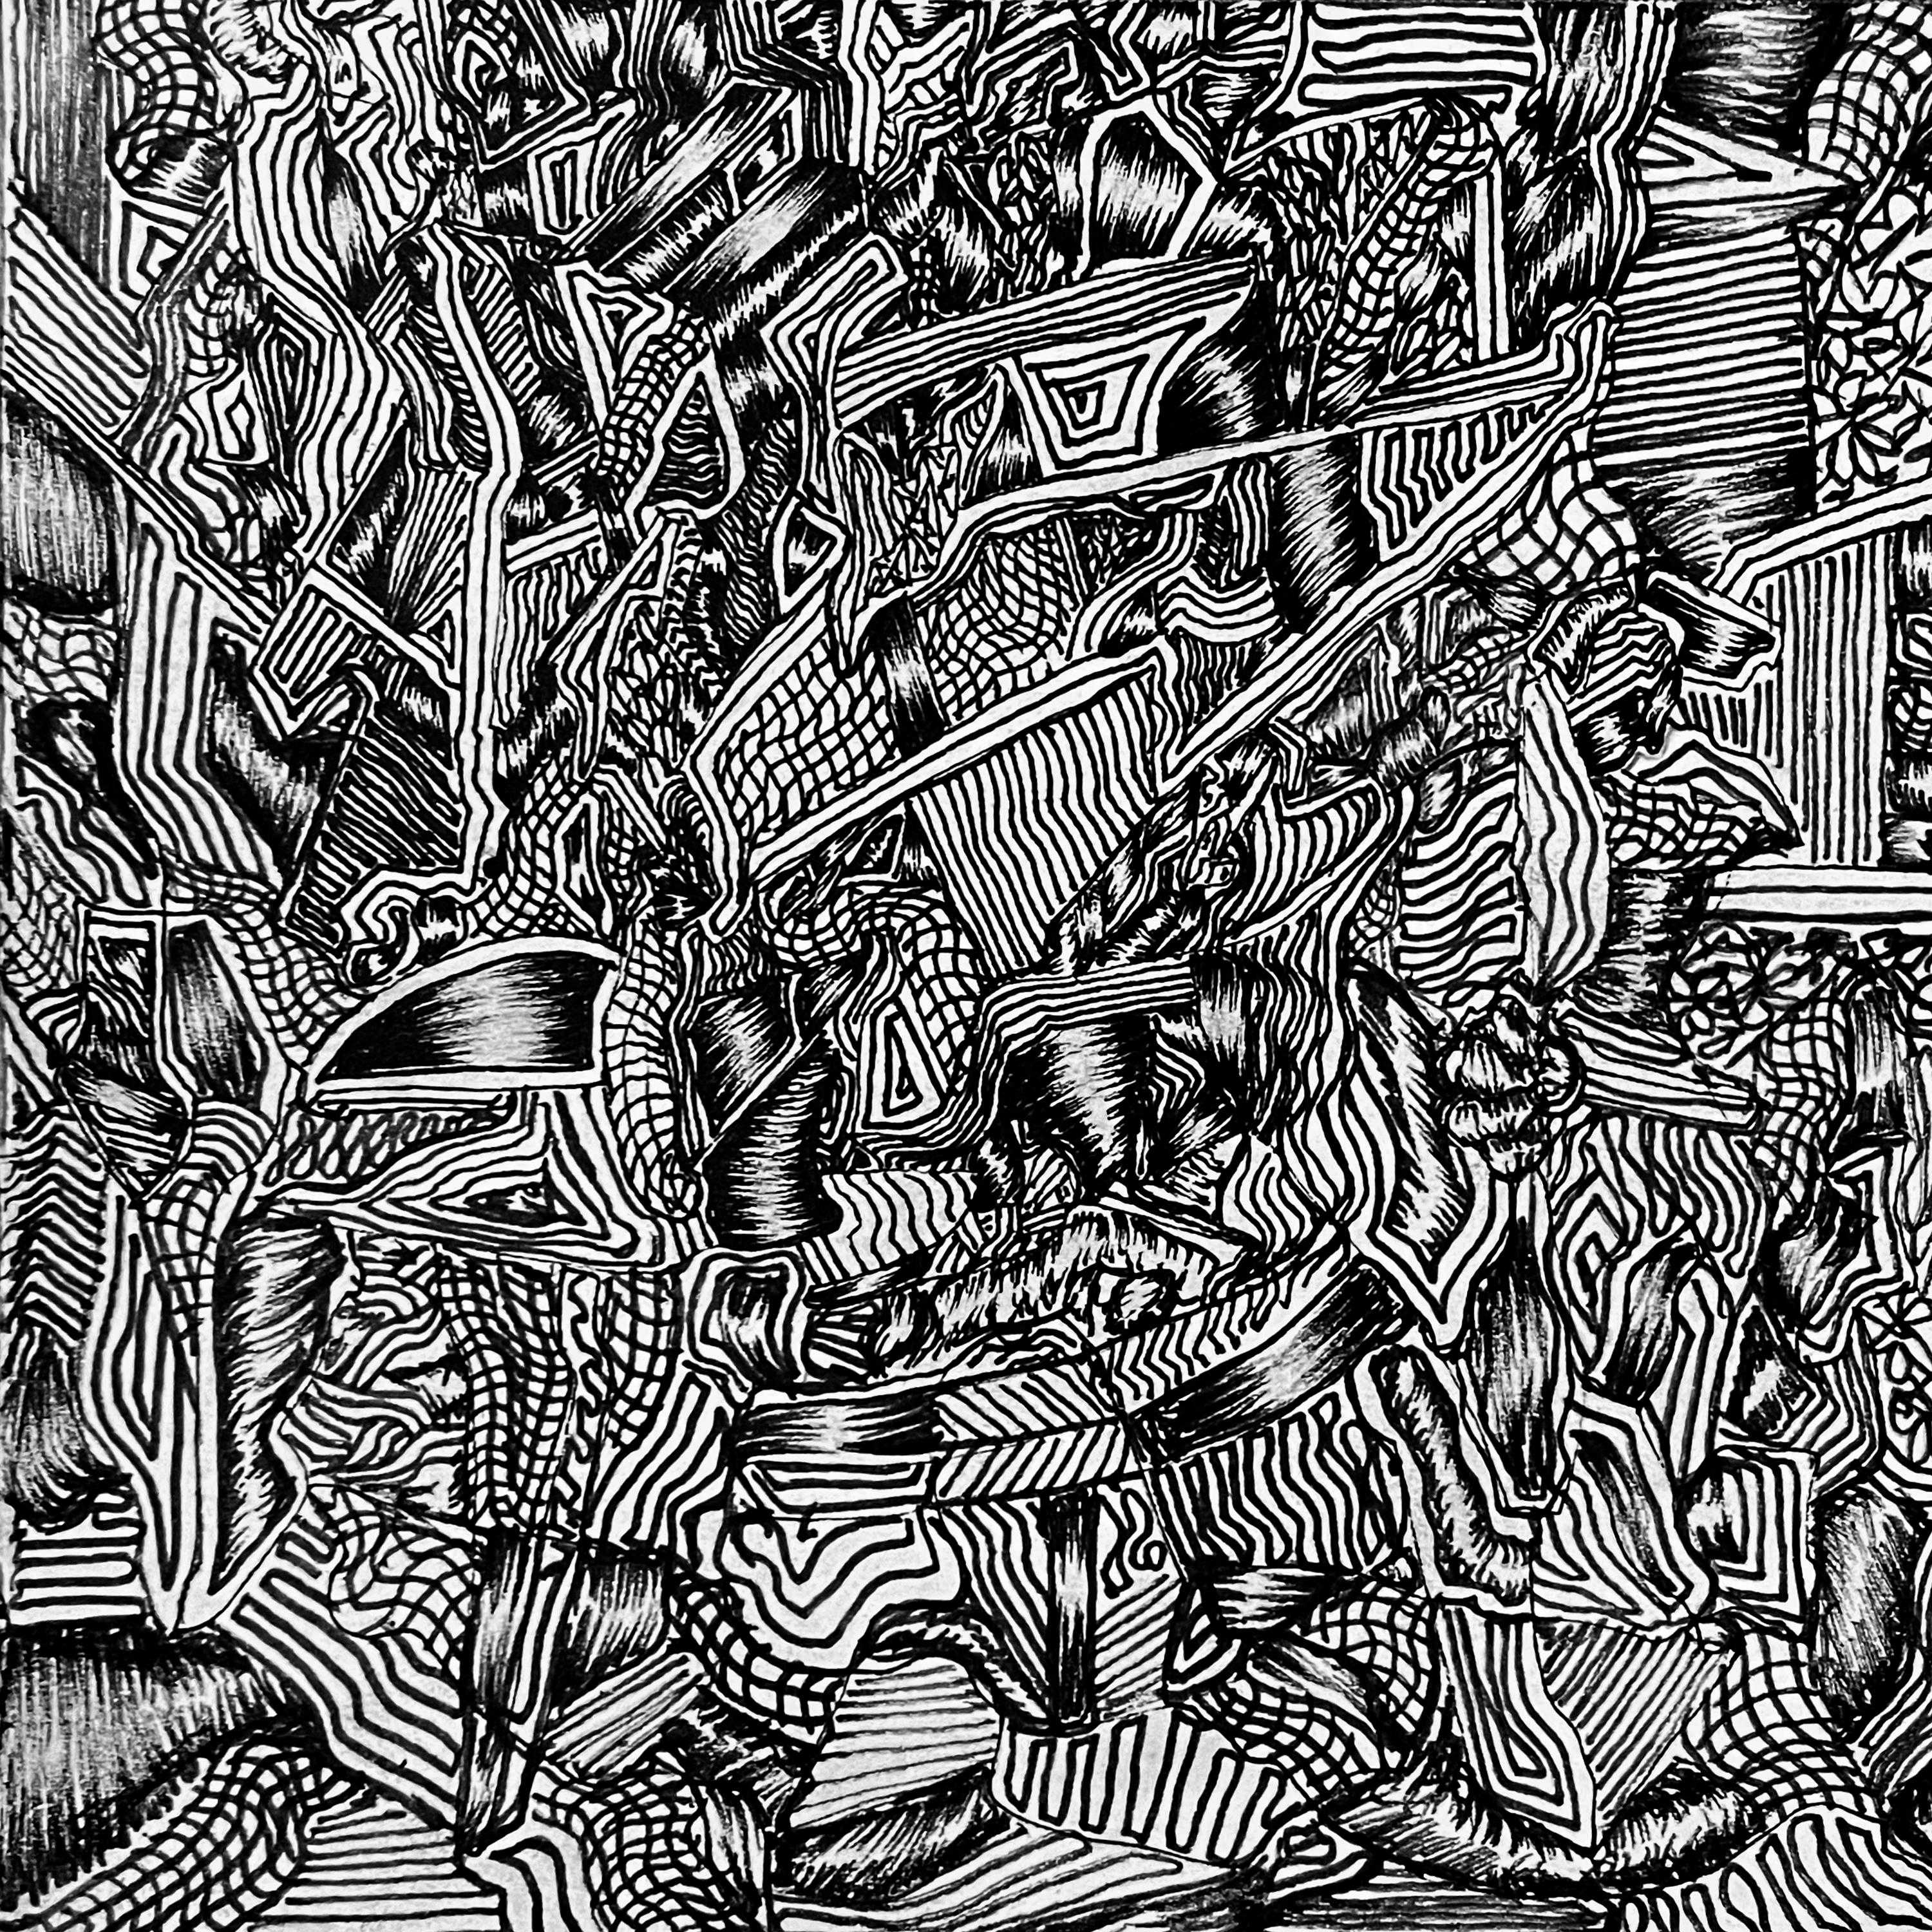 Tinte auf Papier

David Paul Kaye ist ein amerikanischer zeitgenössischer Künstler, der 1982 geboren wurde und in New York City, USA, lebt und arbeitet. Mit dem Schwerpunkt auf lebendigen Linien und komplizierten Kompositionen schafft Kaye fesselnde